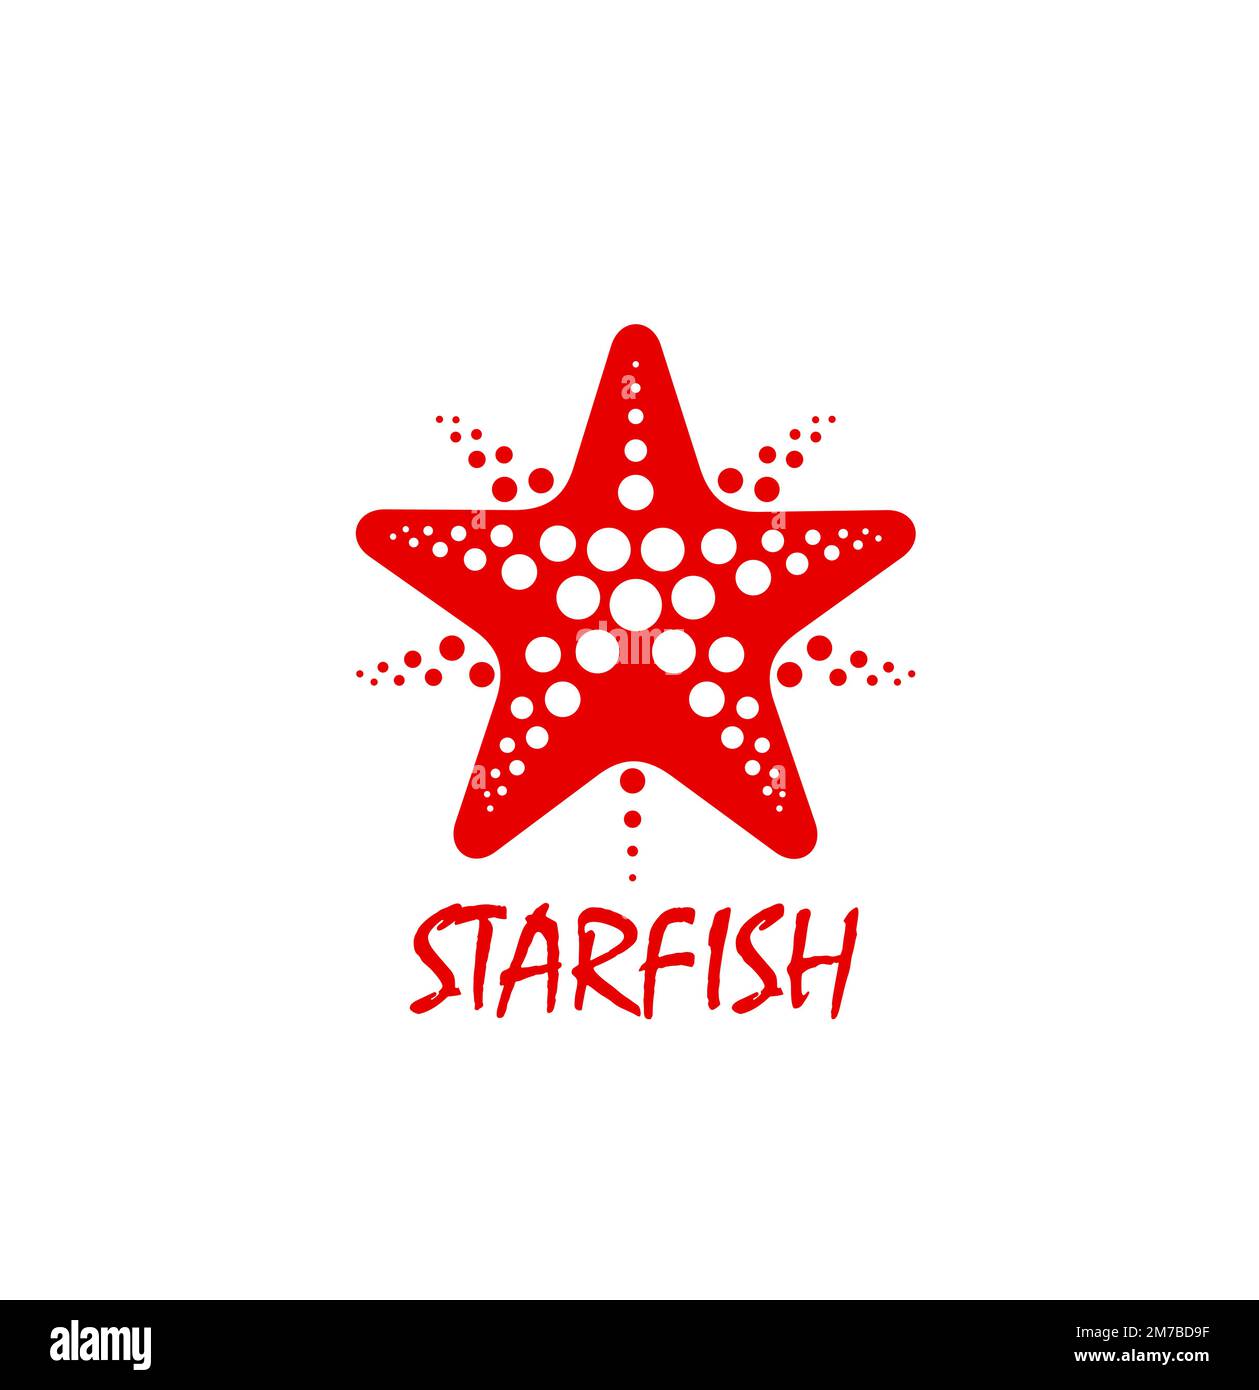 Estrella de mar o icono de pez estrella para marca, empresa o agencia,  vector emblema. Viaje de vacaciones de verano, club de playa y tour de  aventura icono de estrellas de mar,